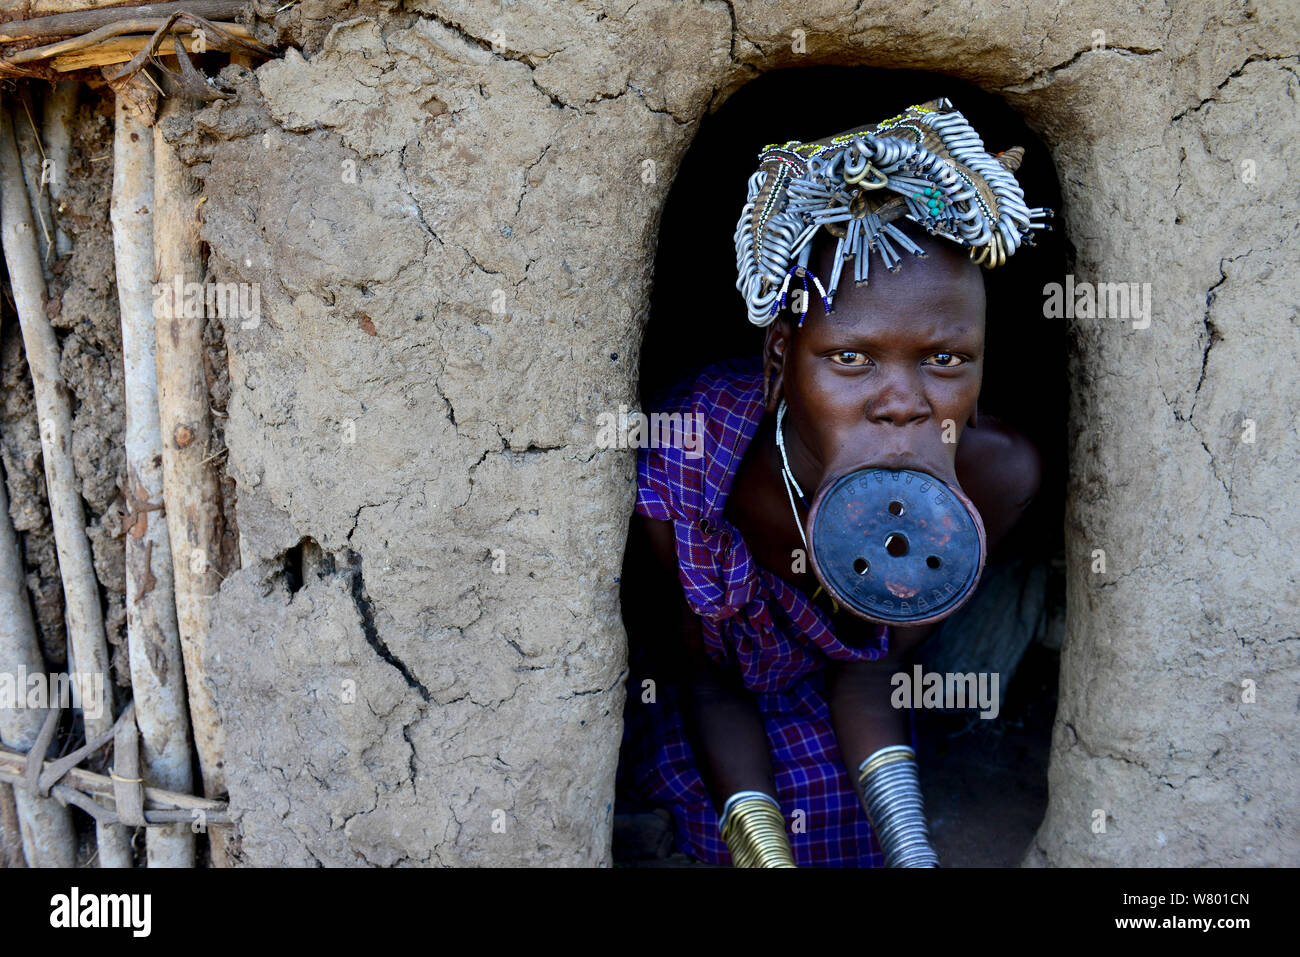 Donna con piastra a labbro, il che significa che lei è una donna sposata, la tribù dei Mursi, Parco Nazionale di Mago. Etiopia, Novembre 2014 Foto Stock